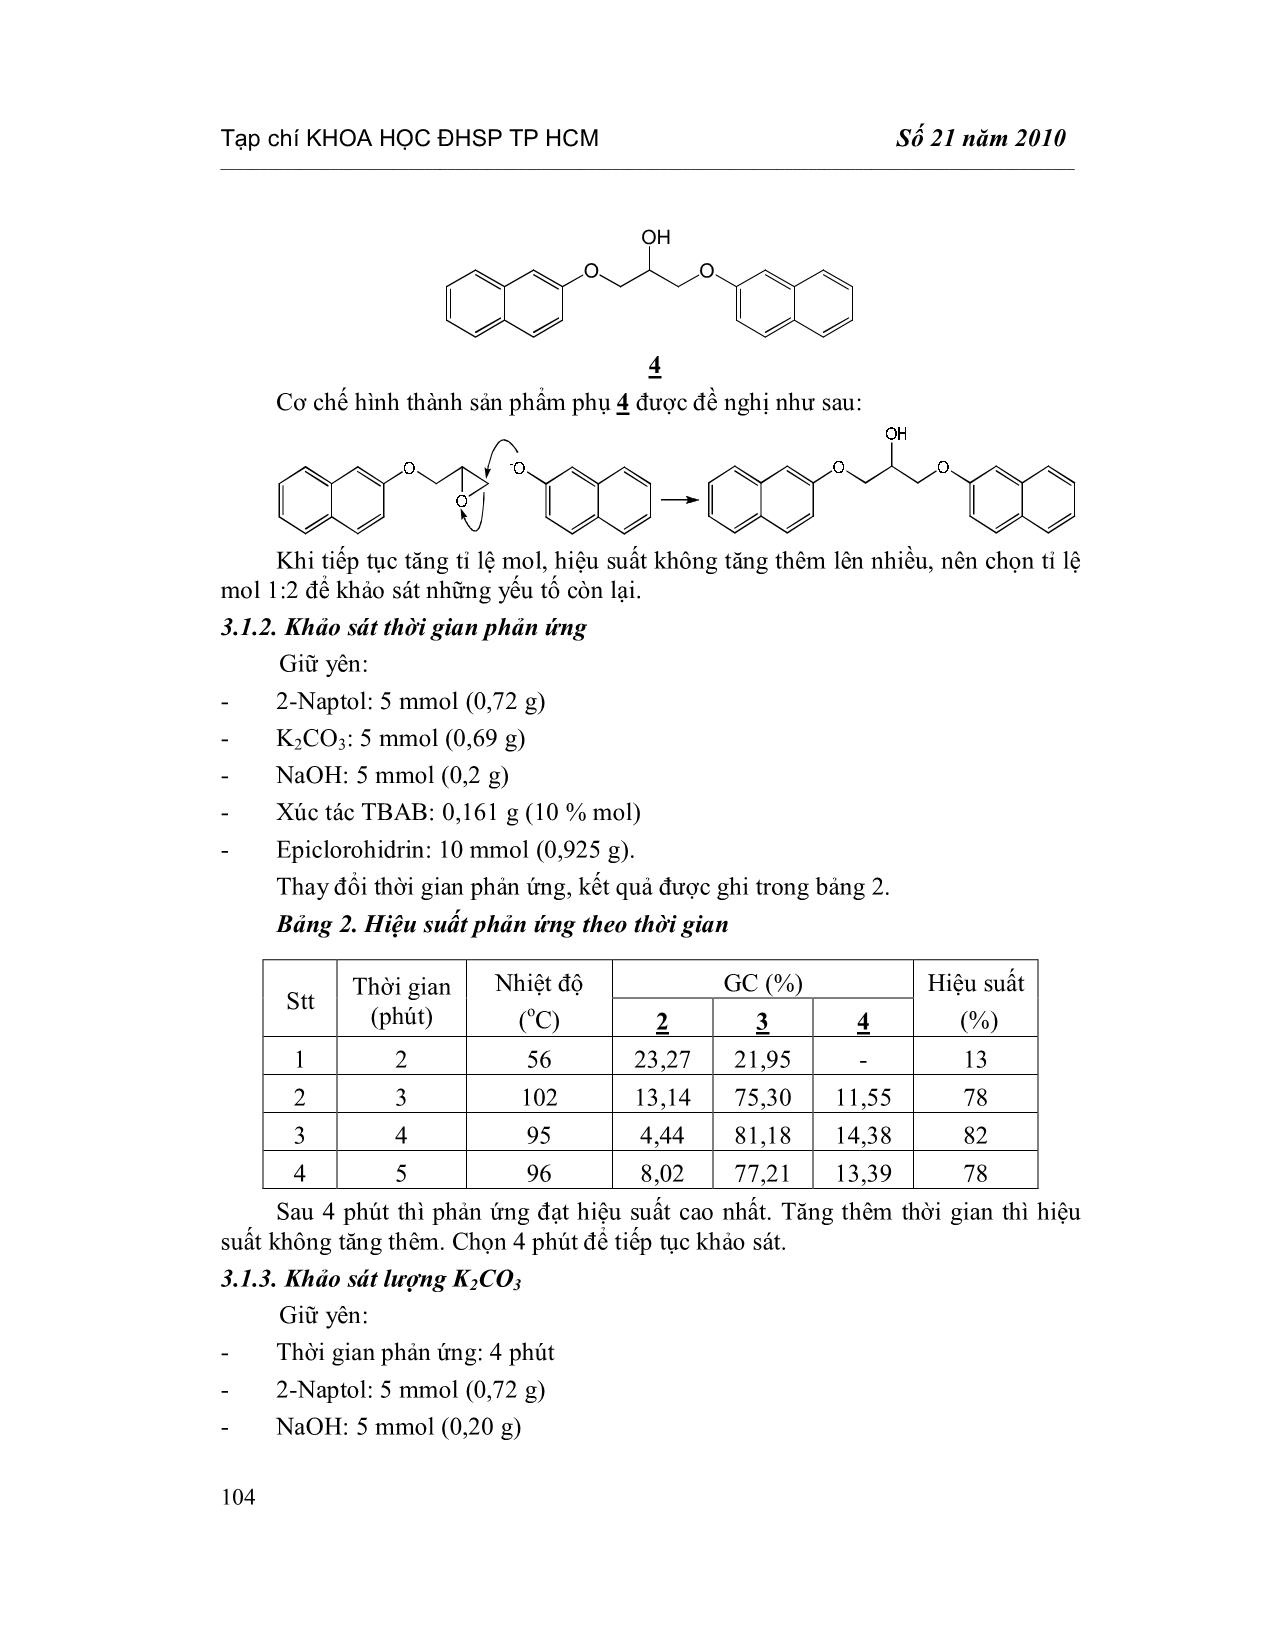 Tổng hợp 3-Naptoxi-1,2-Epoxipropan trong điều kiện hóa học xanh trang 4